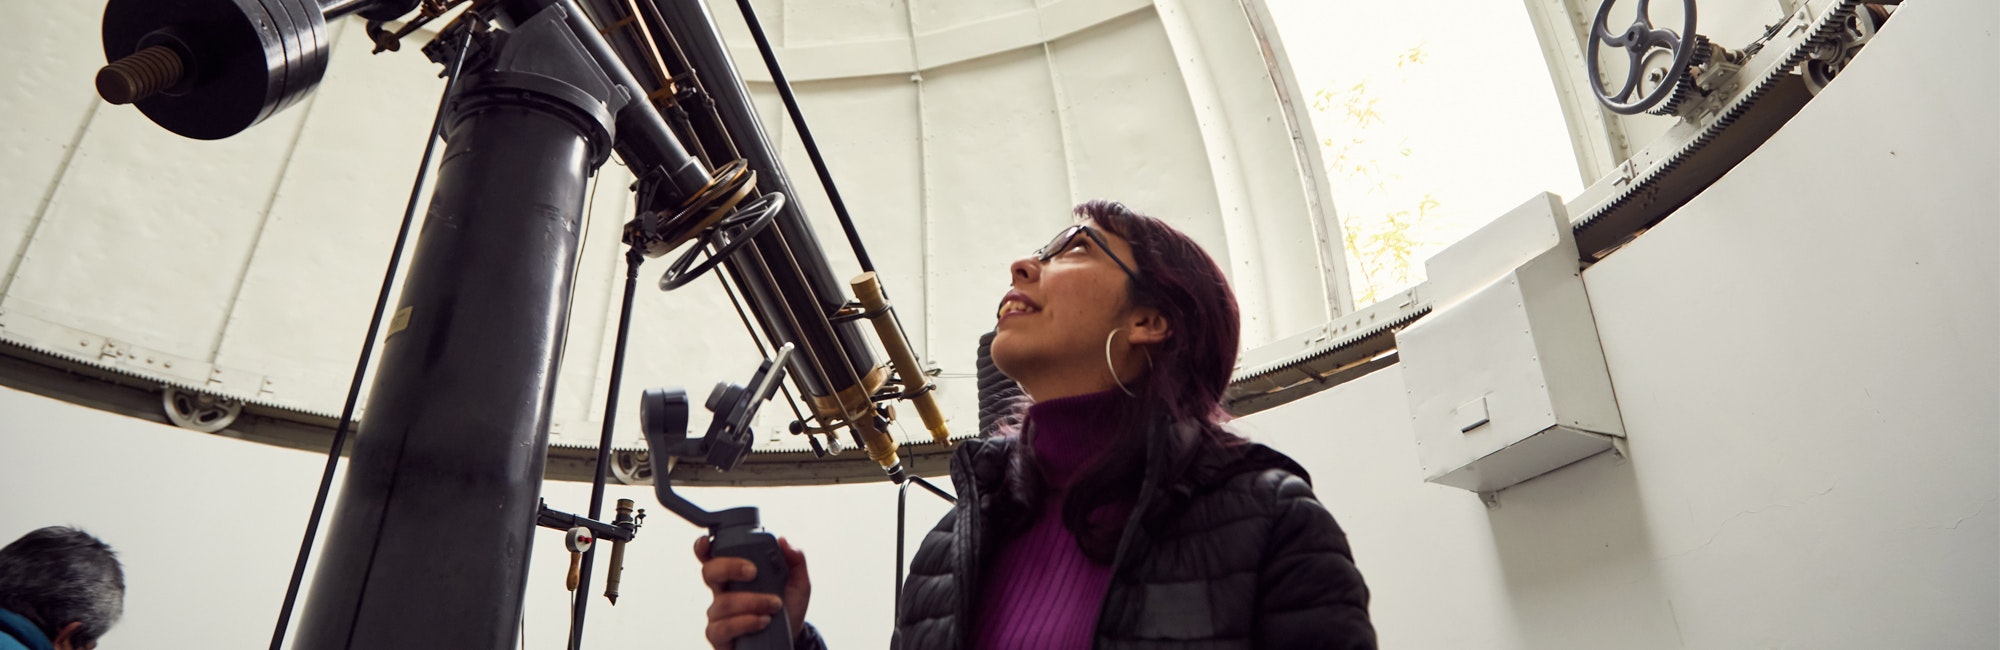 Mulher olhaNDO para cima e segurando o enorme telescópio